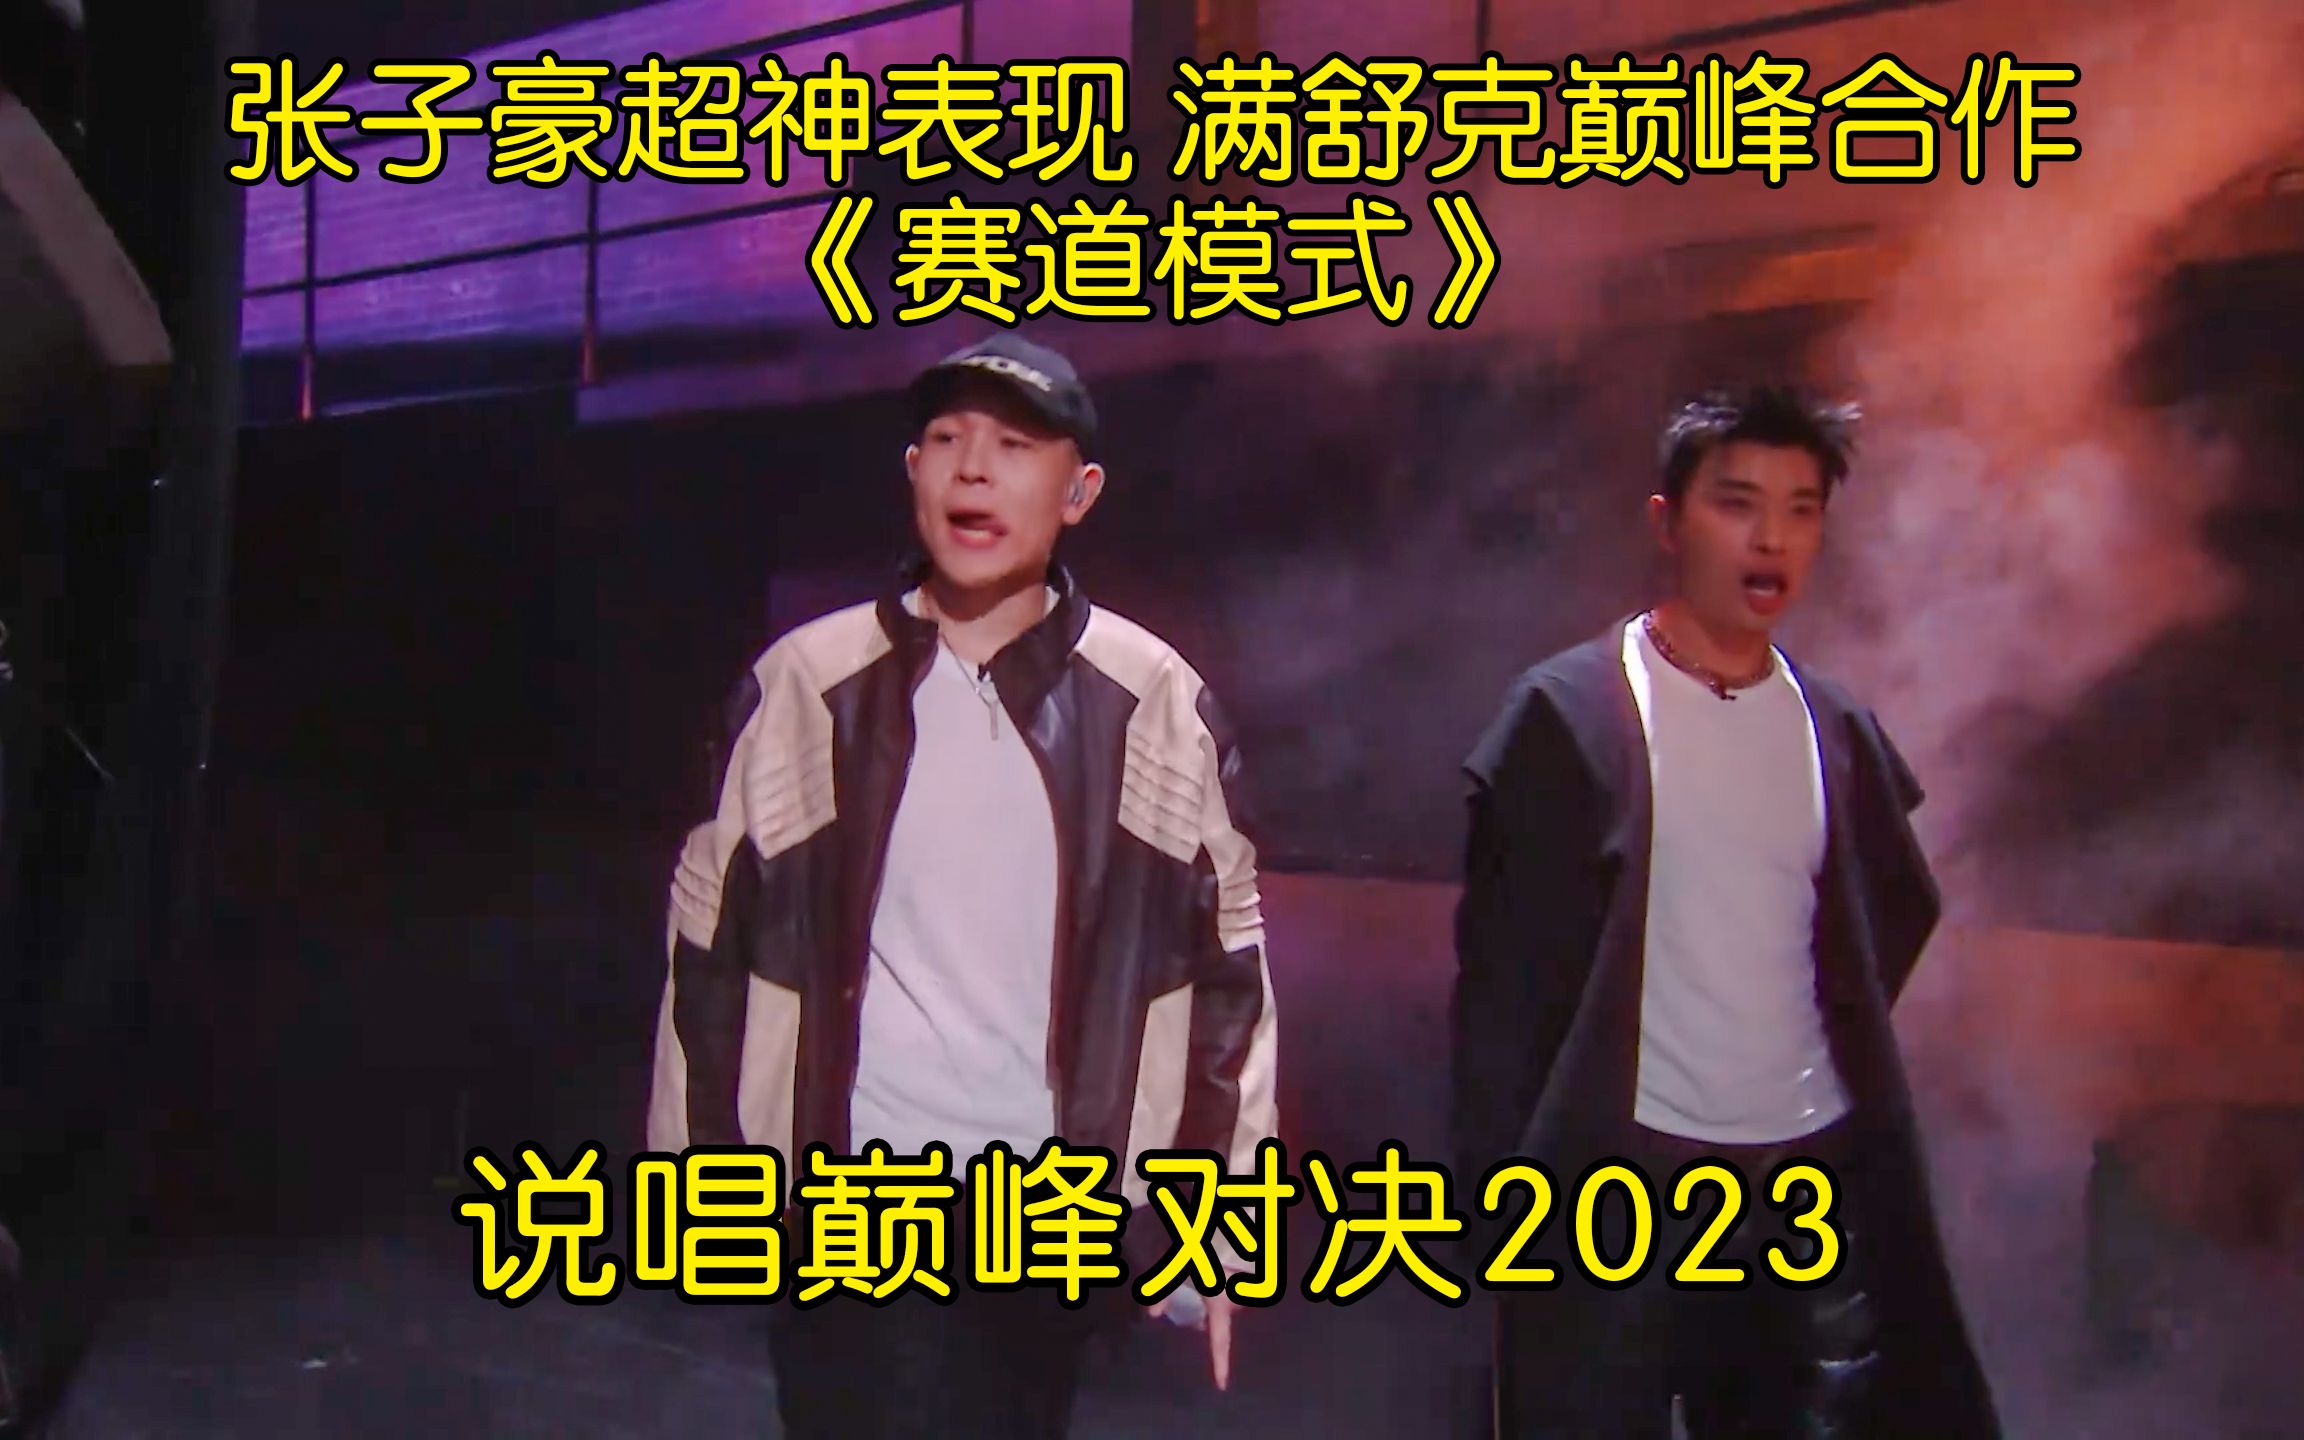 张子豪超神表现 满舒克巅峰合作《赛道模式》 #张子豪 #满舒克 #中国说唱巅峰对决2023